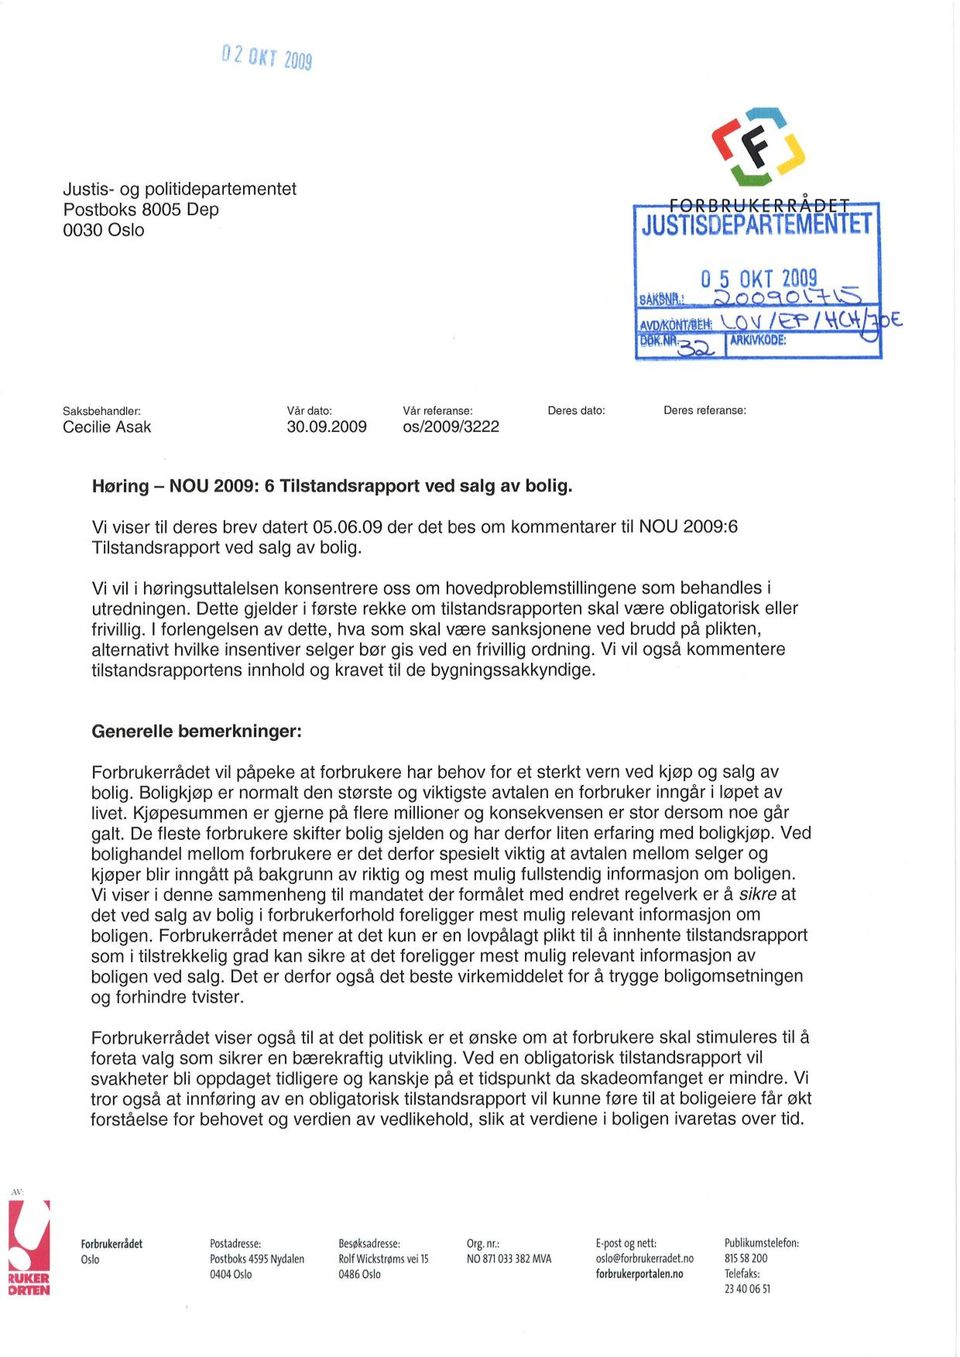 Vi viser til deres brev datert 05.06.09 der det bes om kommentarer til NOU 2009:6 Tilstandsrapport ved salg av bolig.